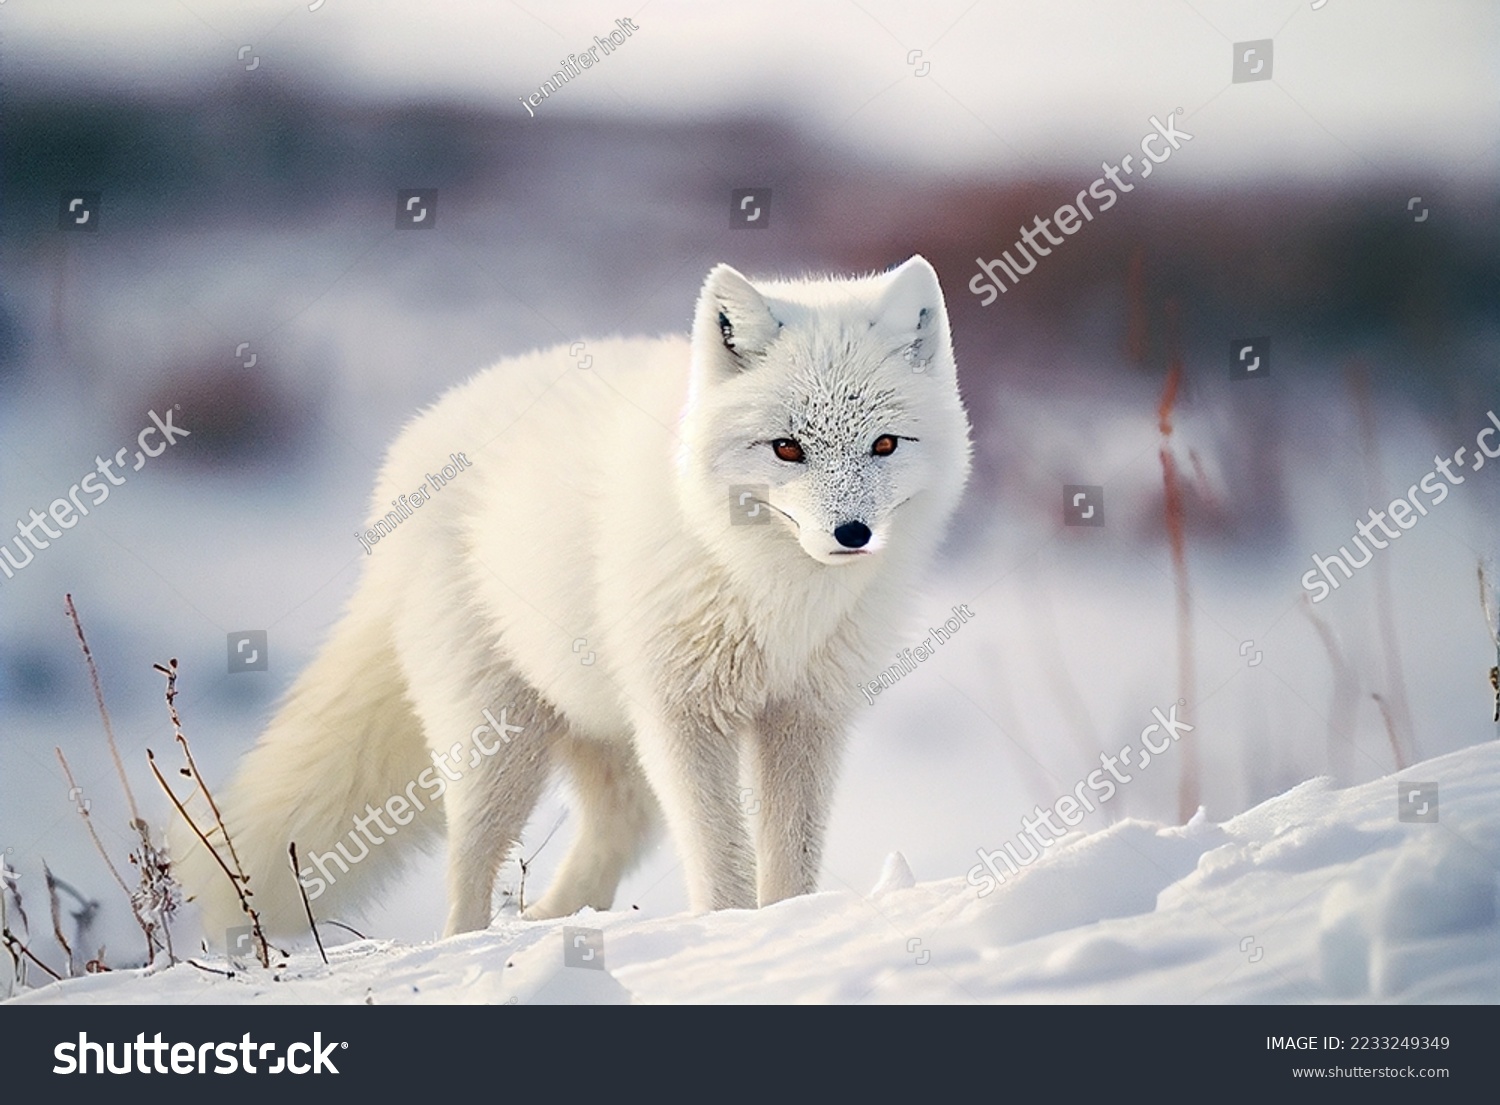 Arctic fox in Canadian Arctic snow #2233249349